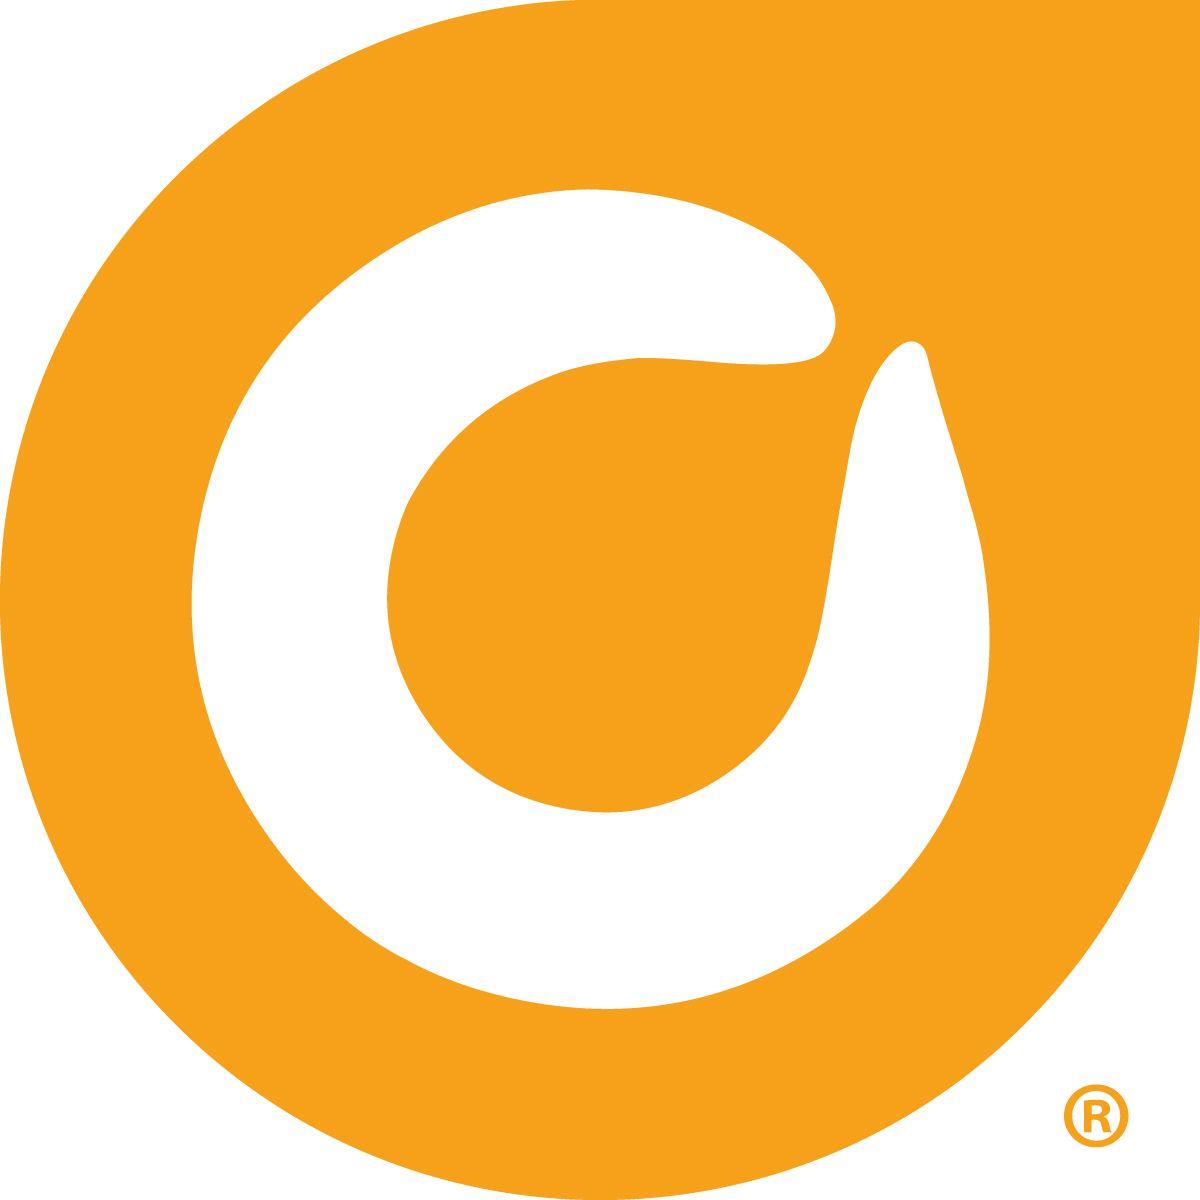 Orsnge Leaf Logo - Orange Leaf Clip Art